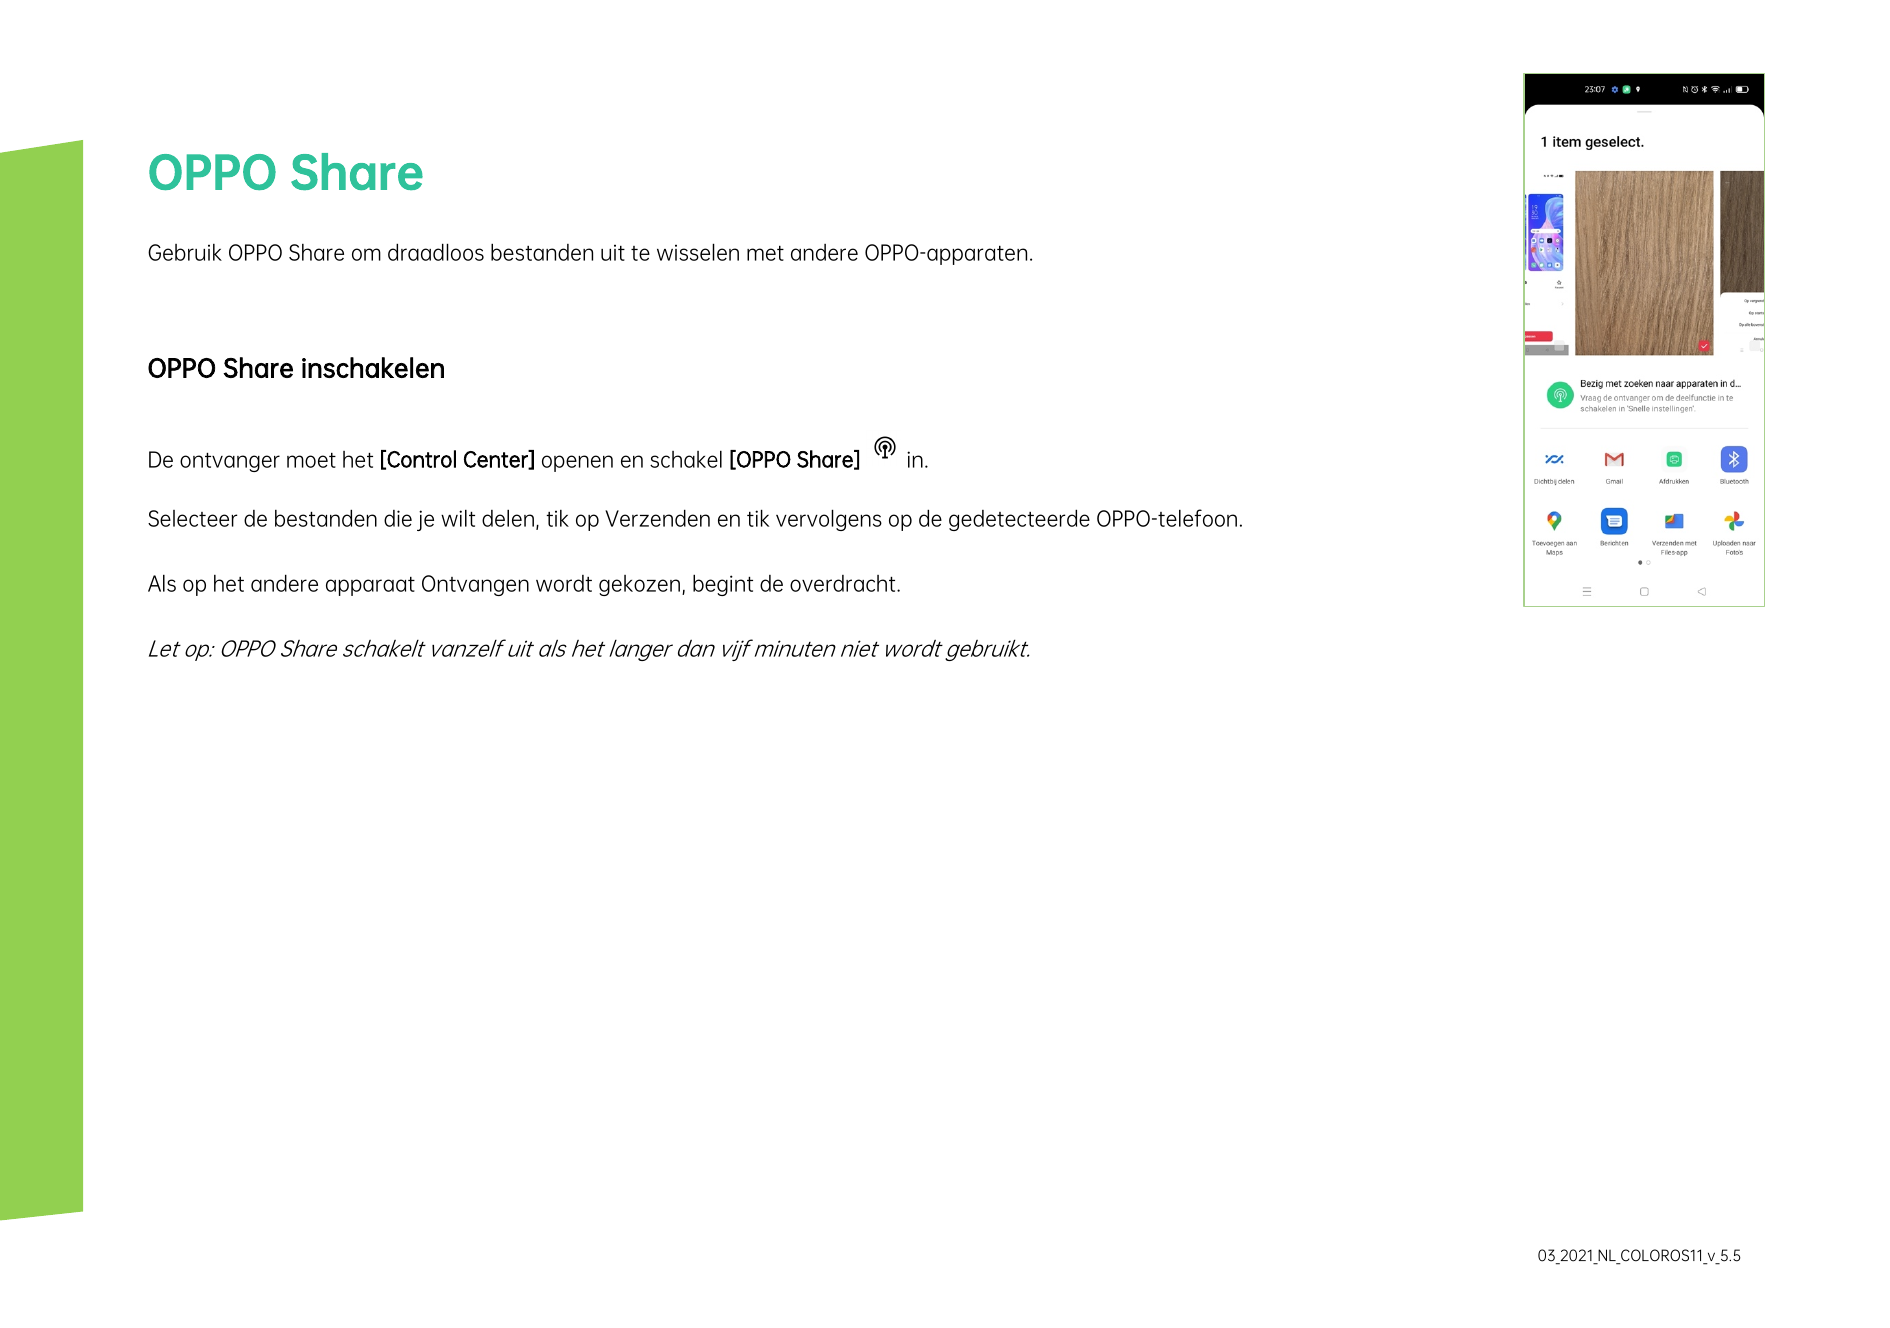 OPPO ShareGebruik OPPO Share om draadloos bestanden uit te wisselen met andere OPPO-apparaten.OPPO Share inschakelenDe ontvanger